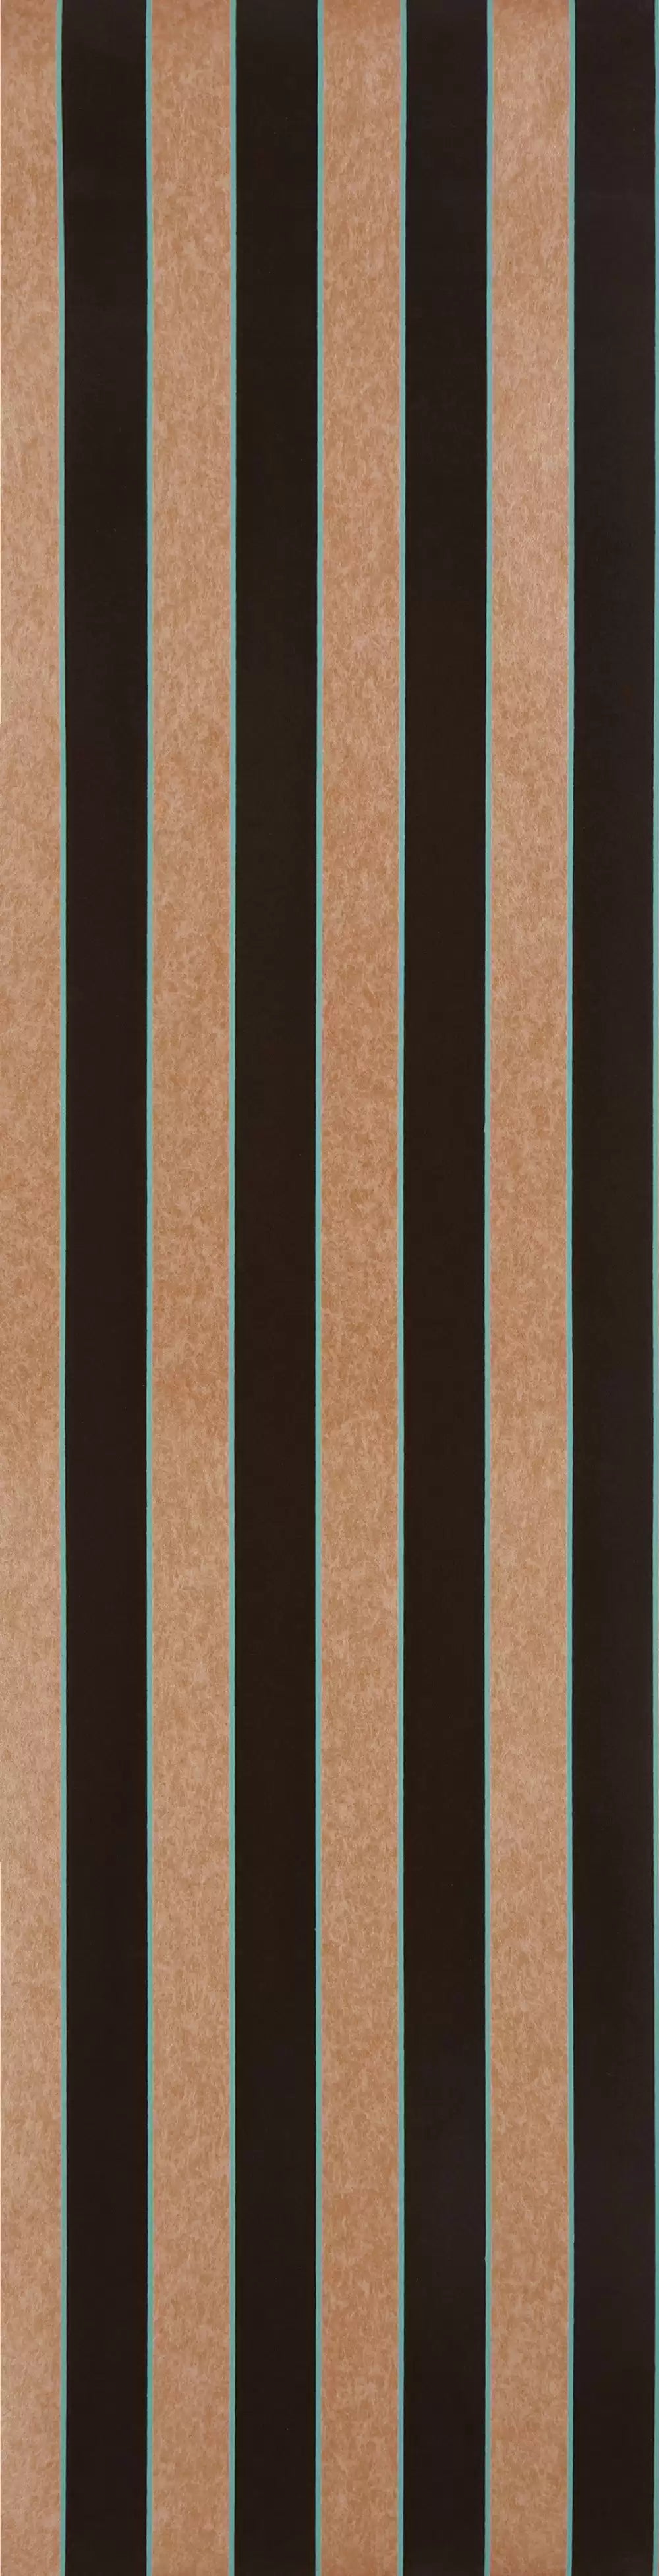 regency-stripe-siena